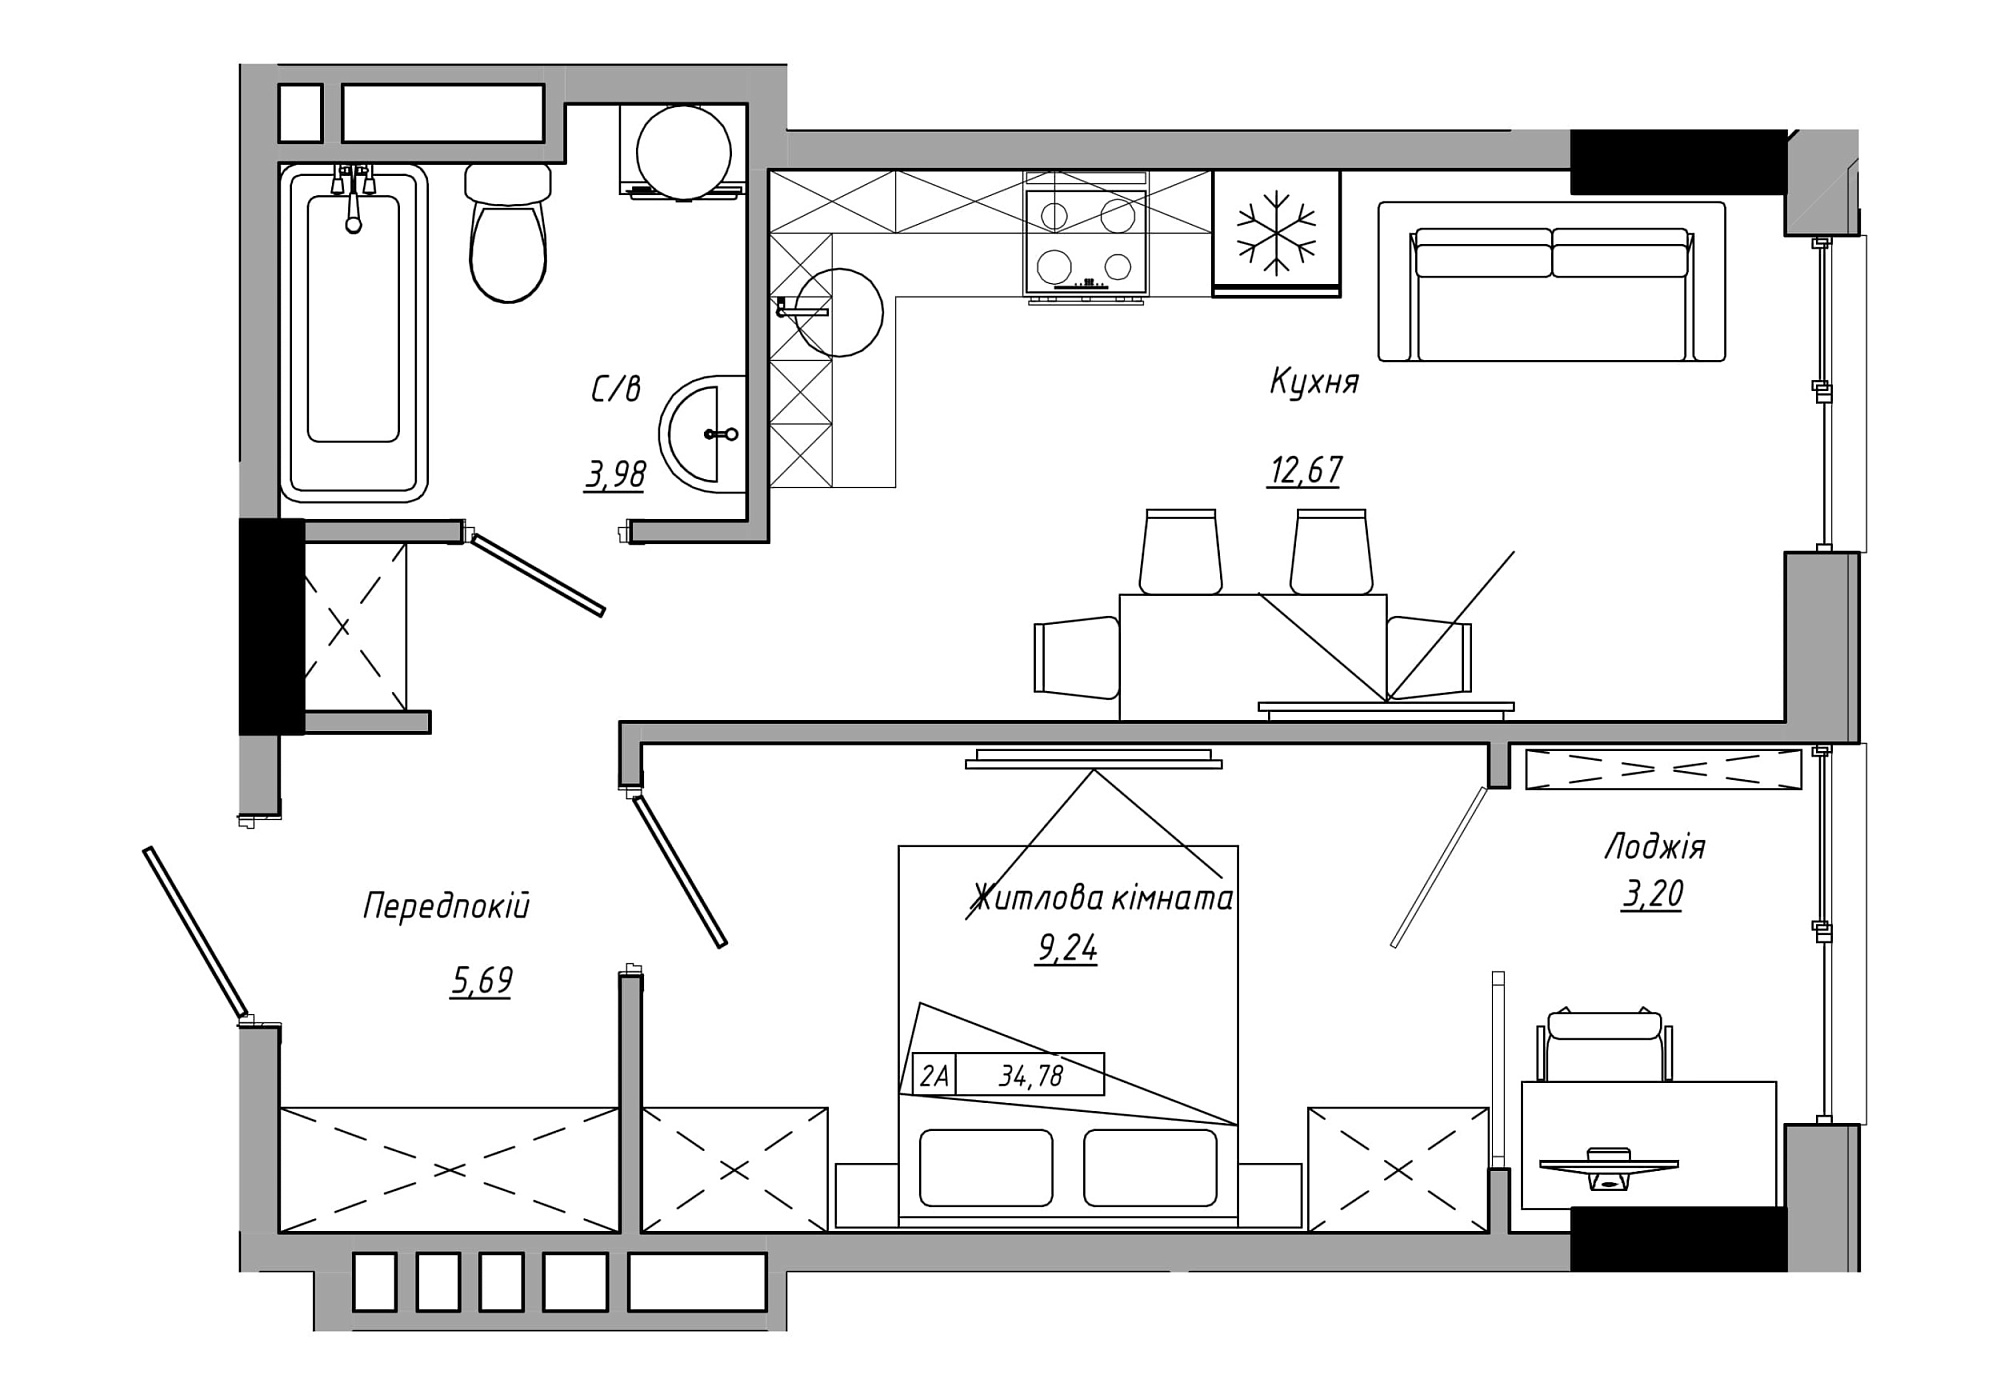 Планування 1-к квартира площею 34.78м2, AB-21-05/00002.